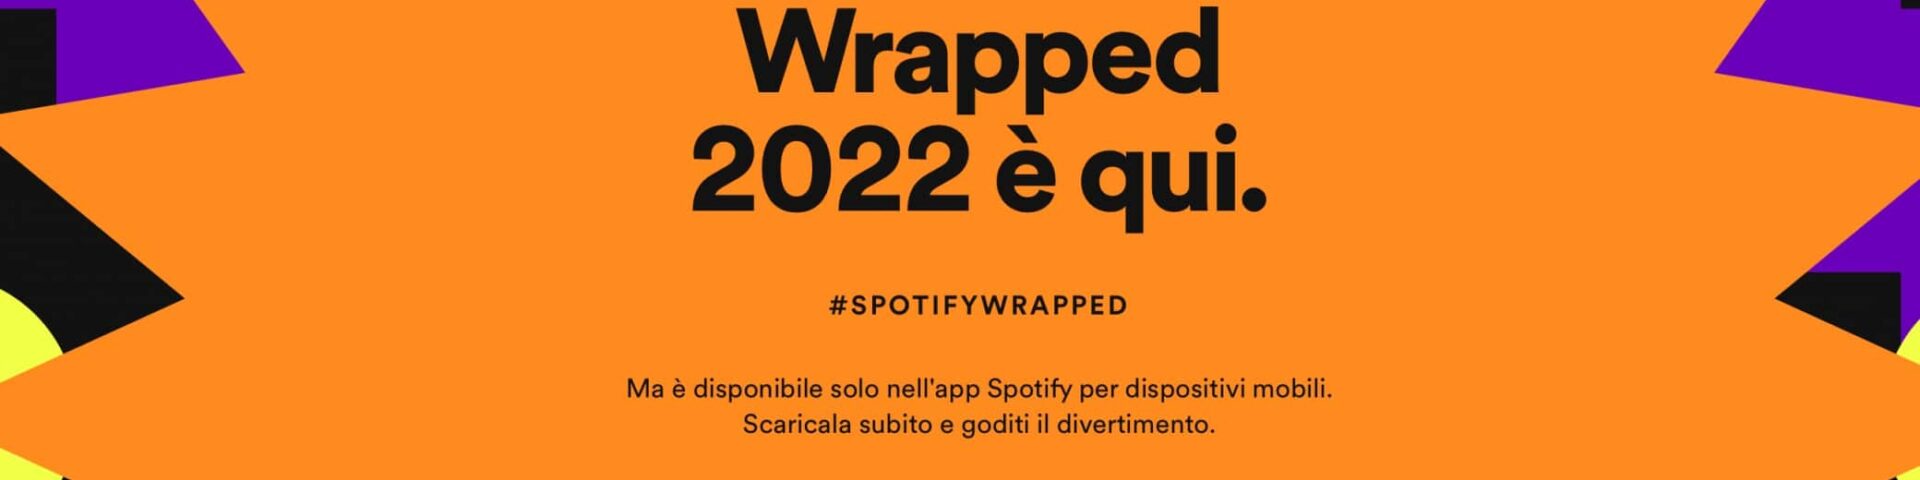 Spotify Wrapped 2022: come vedere canzoni e artisti più ascoltati nel 2022